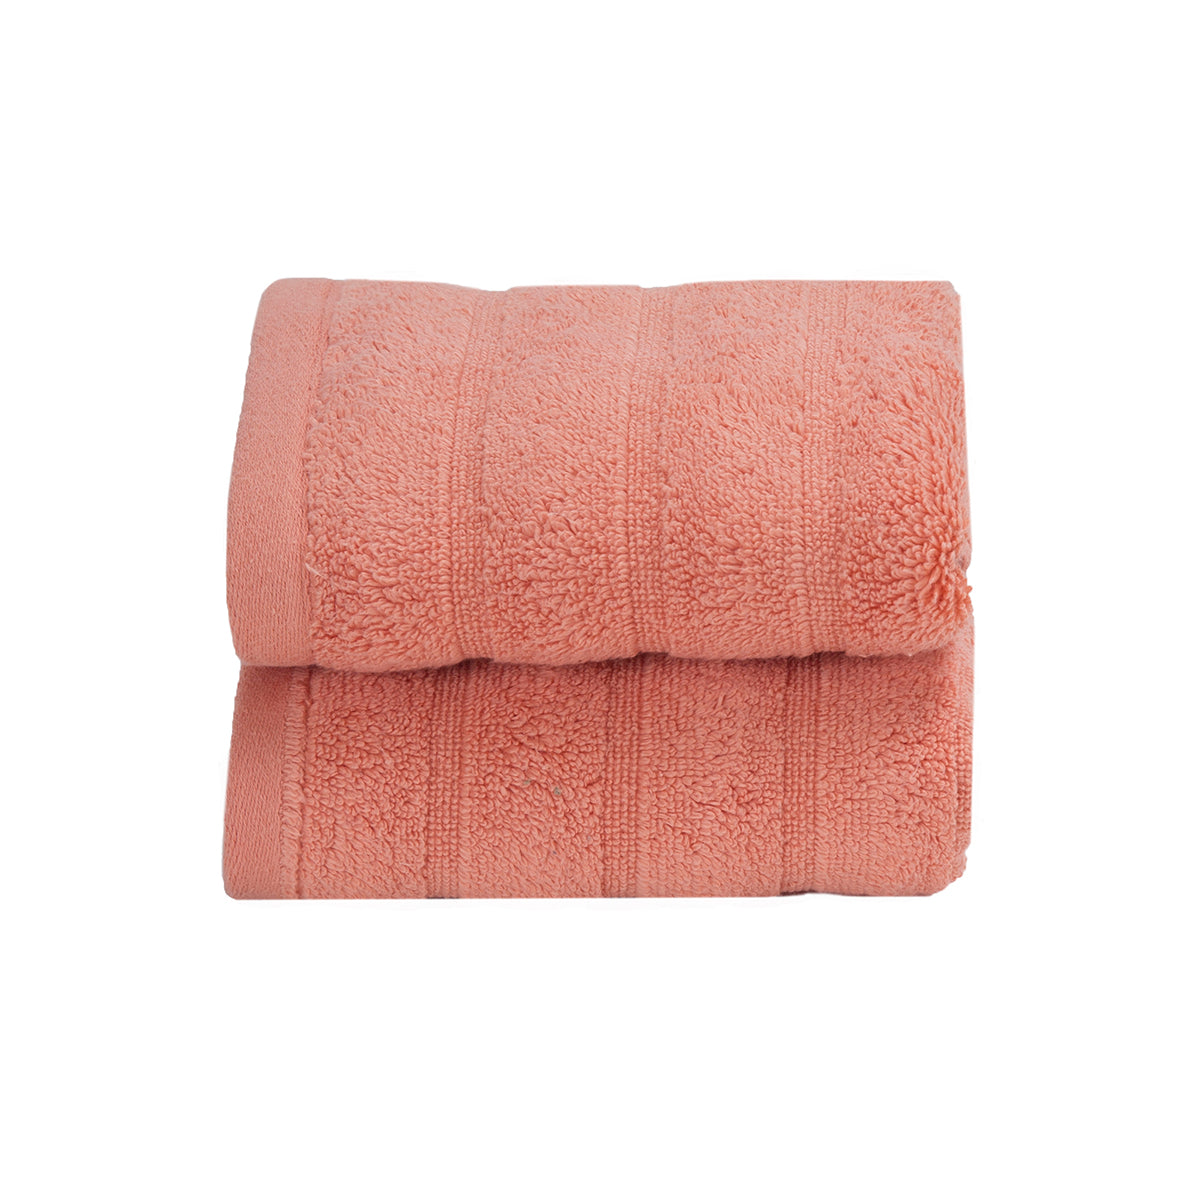 Casper Antimicrobial Antifungal Super Absorbent & Lofty Melon Towel Set